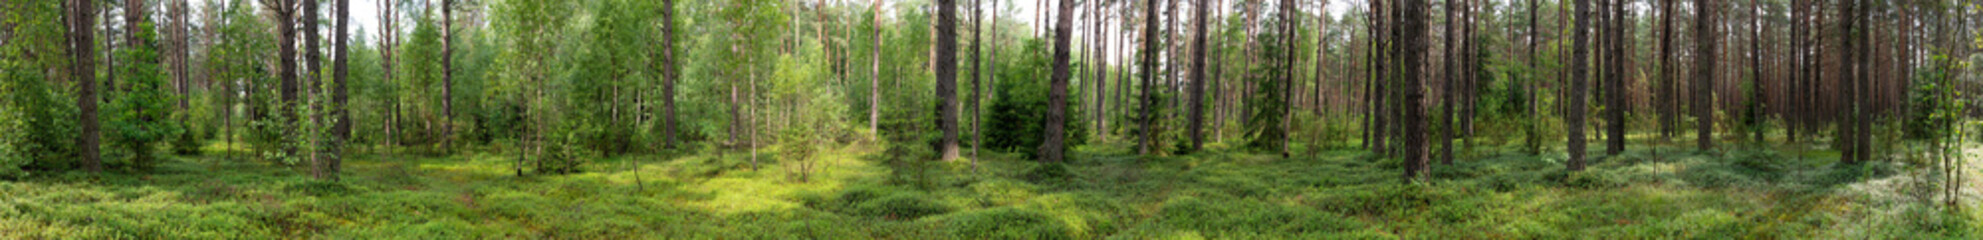 Landscape of Belarus - pine forest